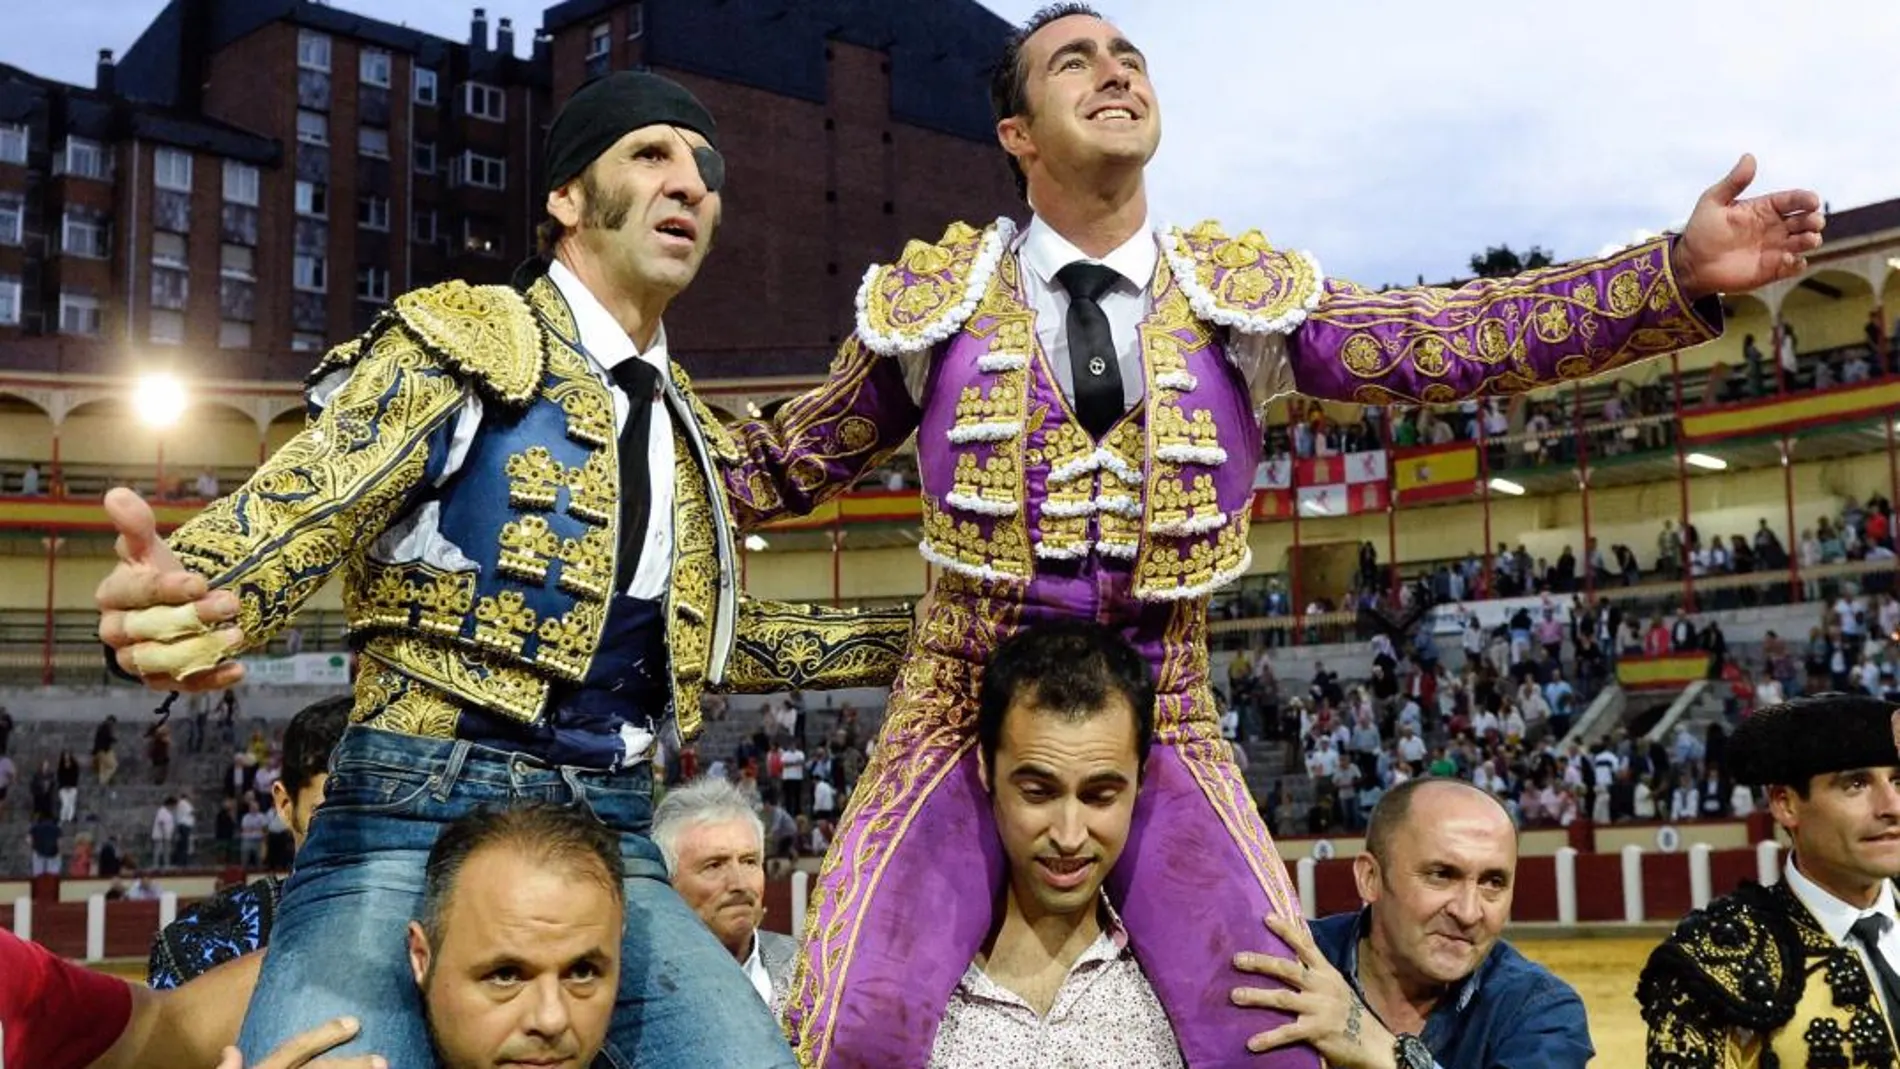 Los diestros Juan José Padilla y David Fandila “El Fandi” salen a hombros esta tarde tras el festejo taurino de la Feria de Nuestra Señora de San Lorenzo de Valladolid / Efe